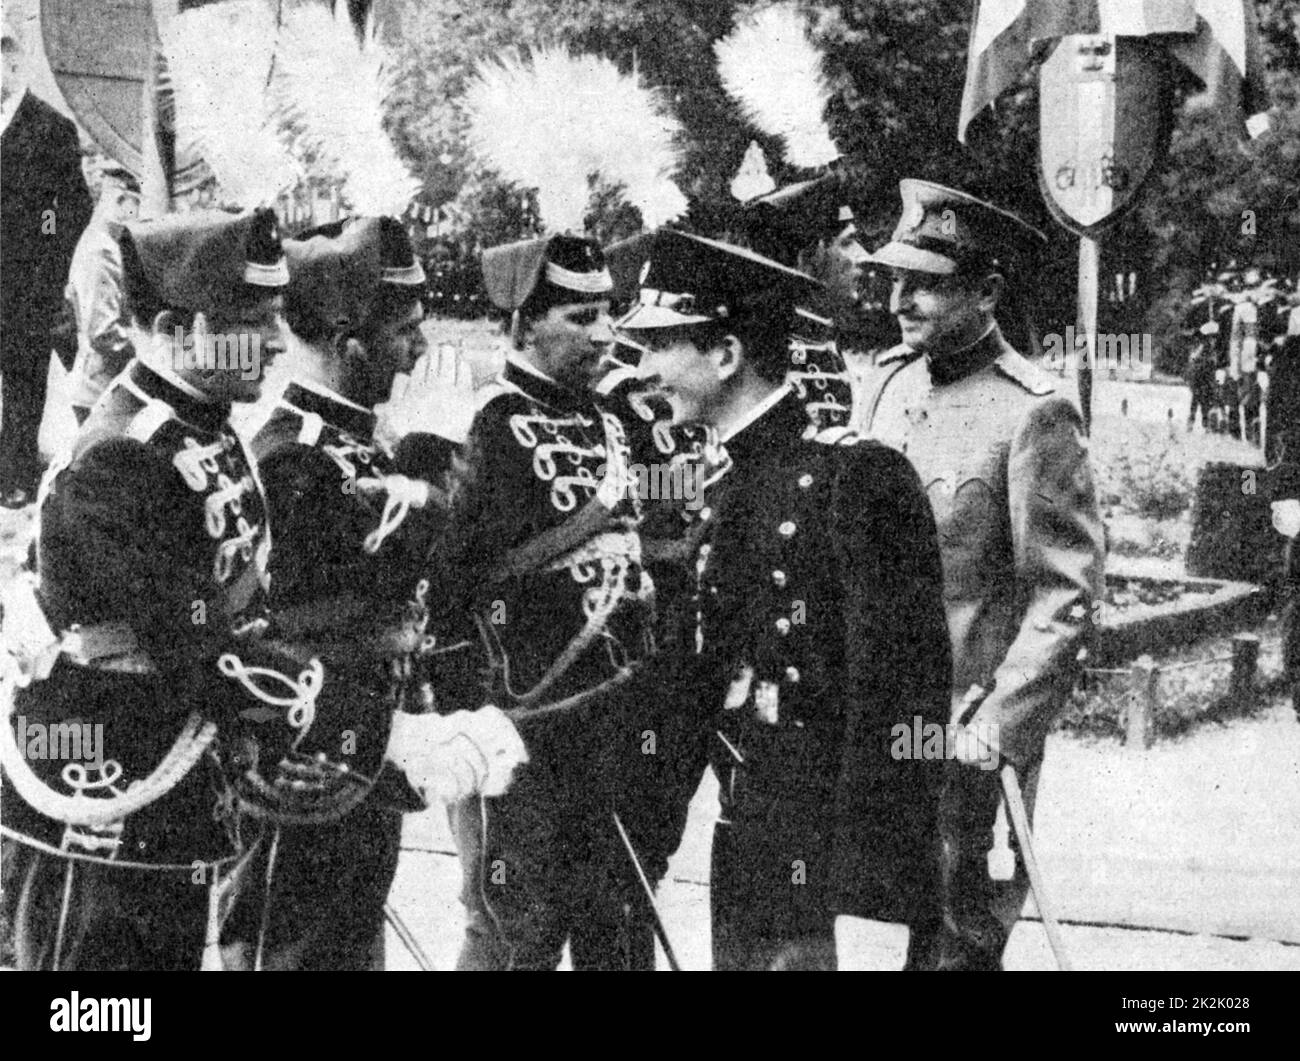 Prinz Paul von Jugoslawien, der Regent 1934-1941, rechts, und der Junge Peter II., König von Jugoslawien 1934-1945, untersuchen eine Parade am Festival eine der Offiziere, Belgrad 1940. Stockfoto